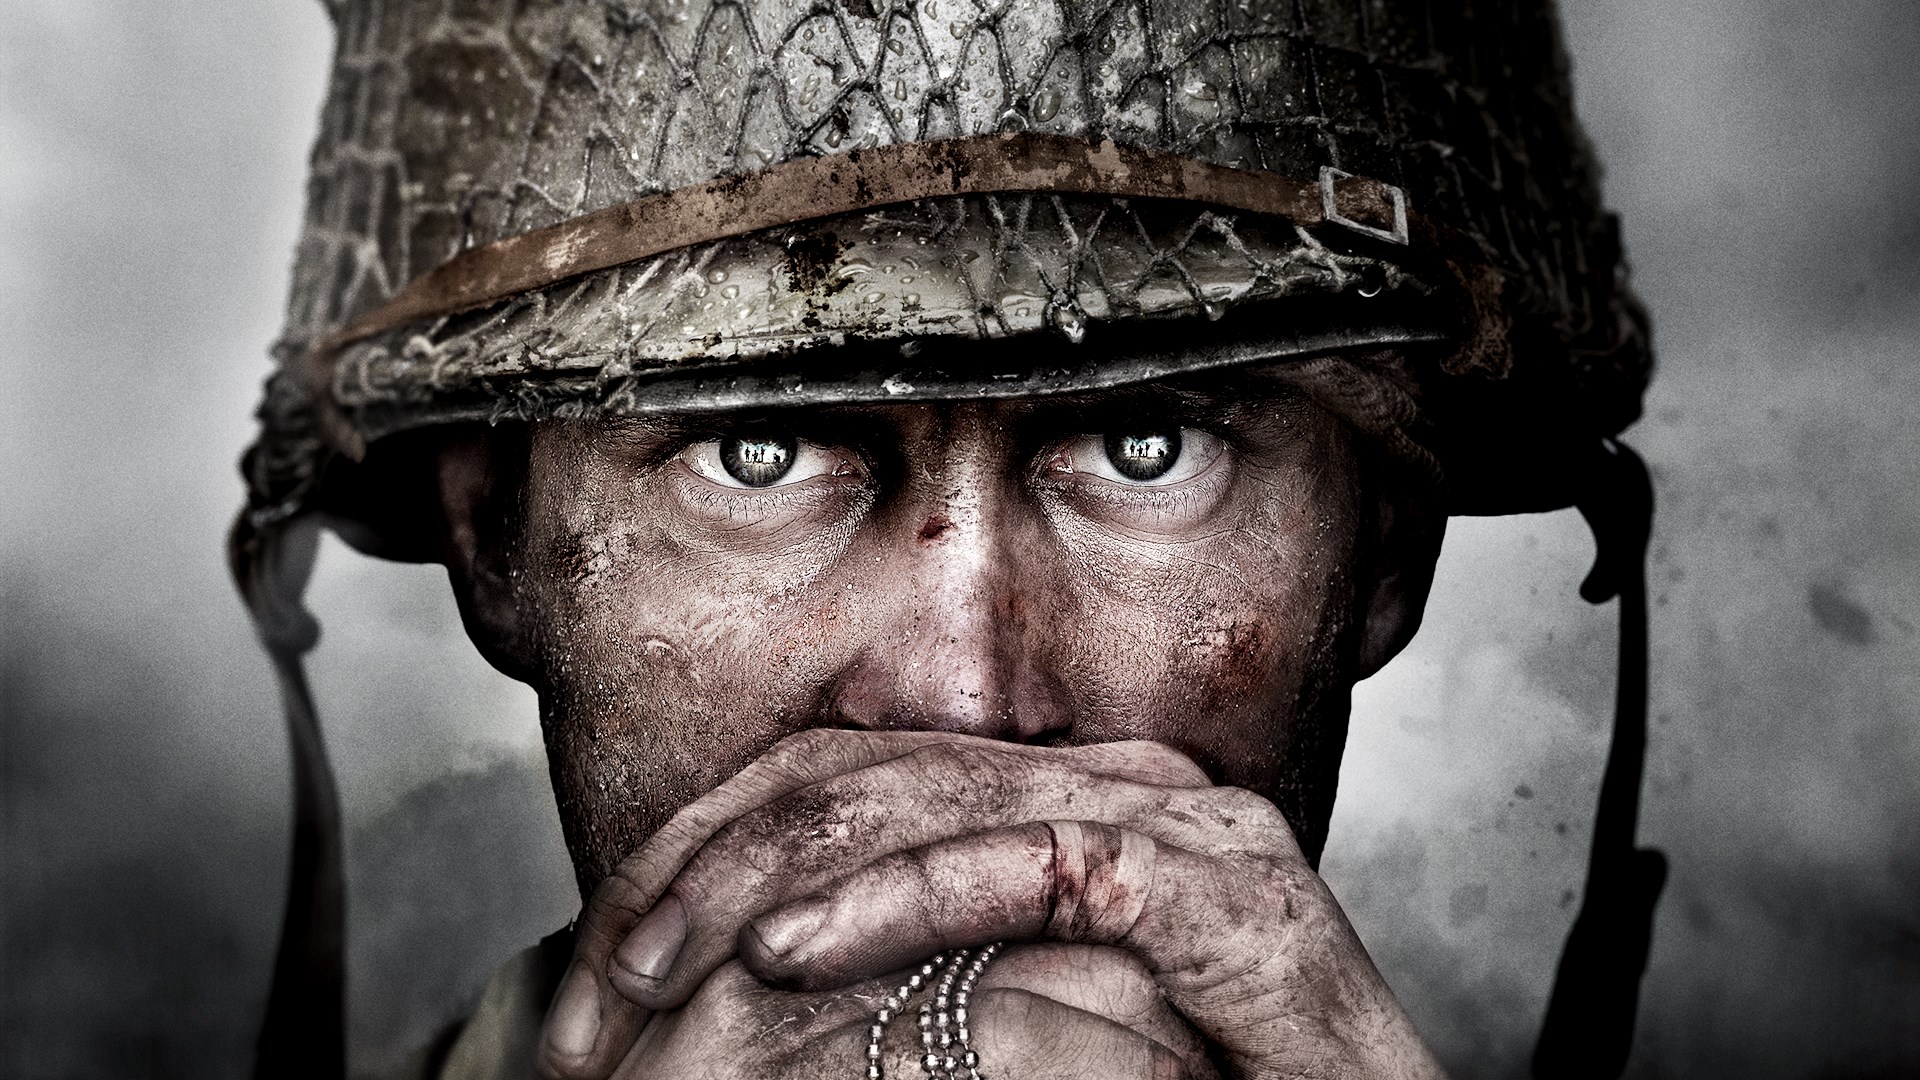 Is Call of Duty: WWII Split-Screen?